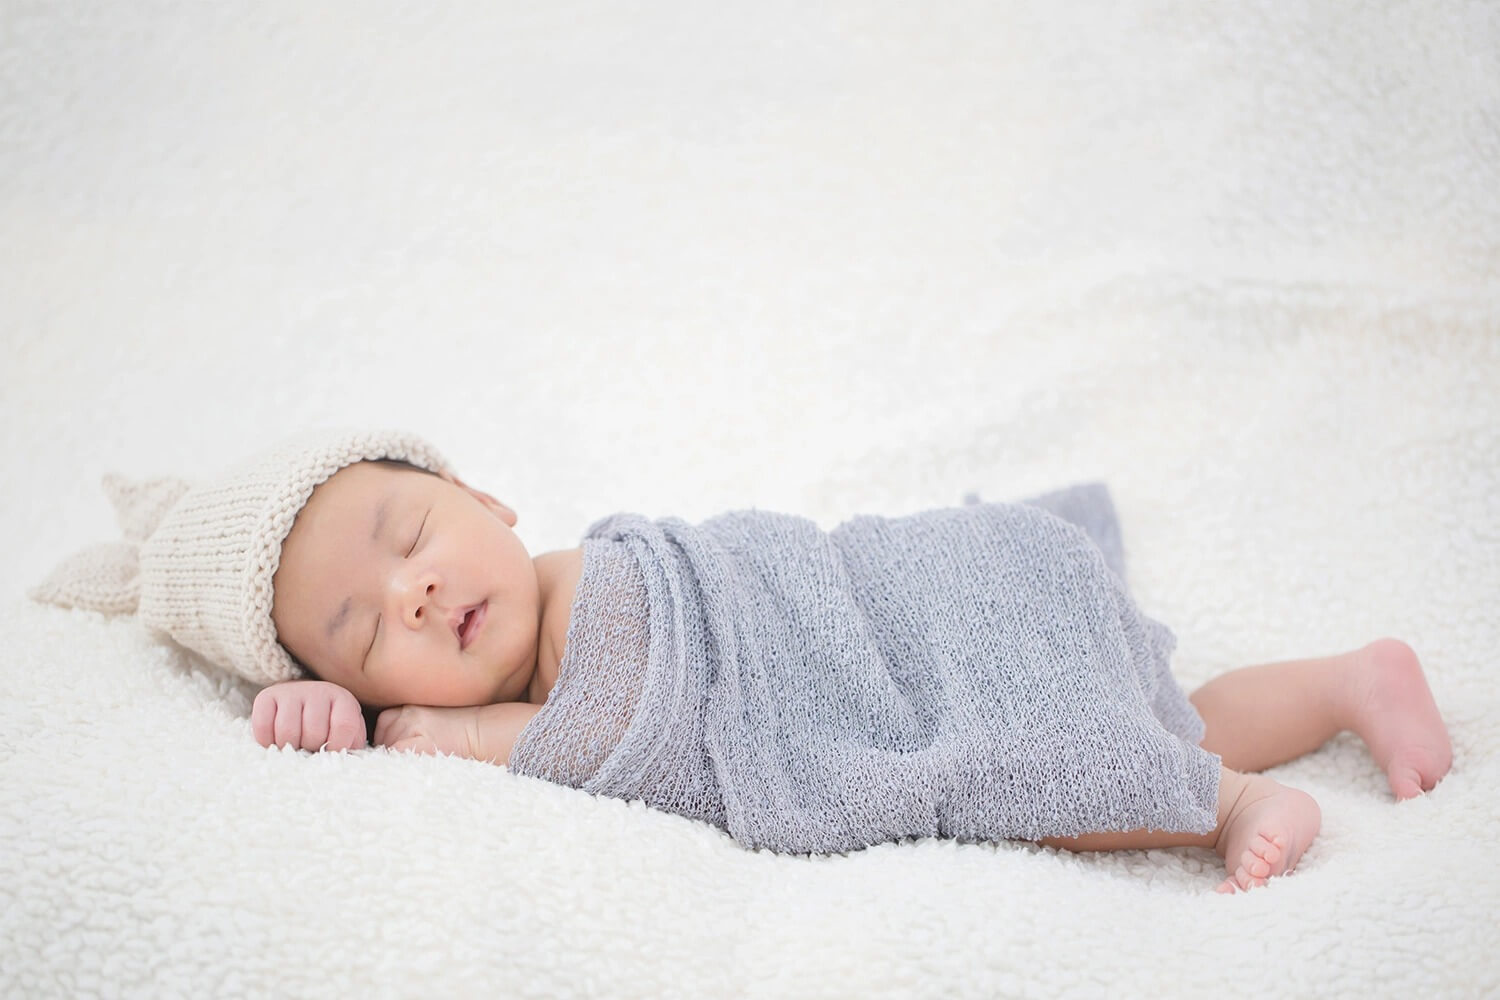 ตารางการนอนของทารก 0-1 ปี ในแต่ละวันการนอนของทารกเป็นอย่างไร